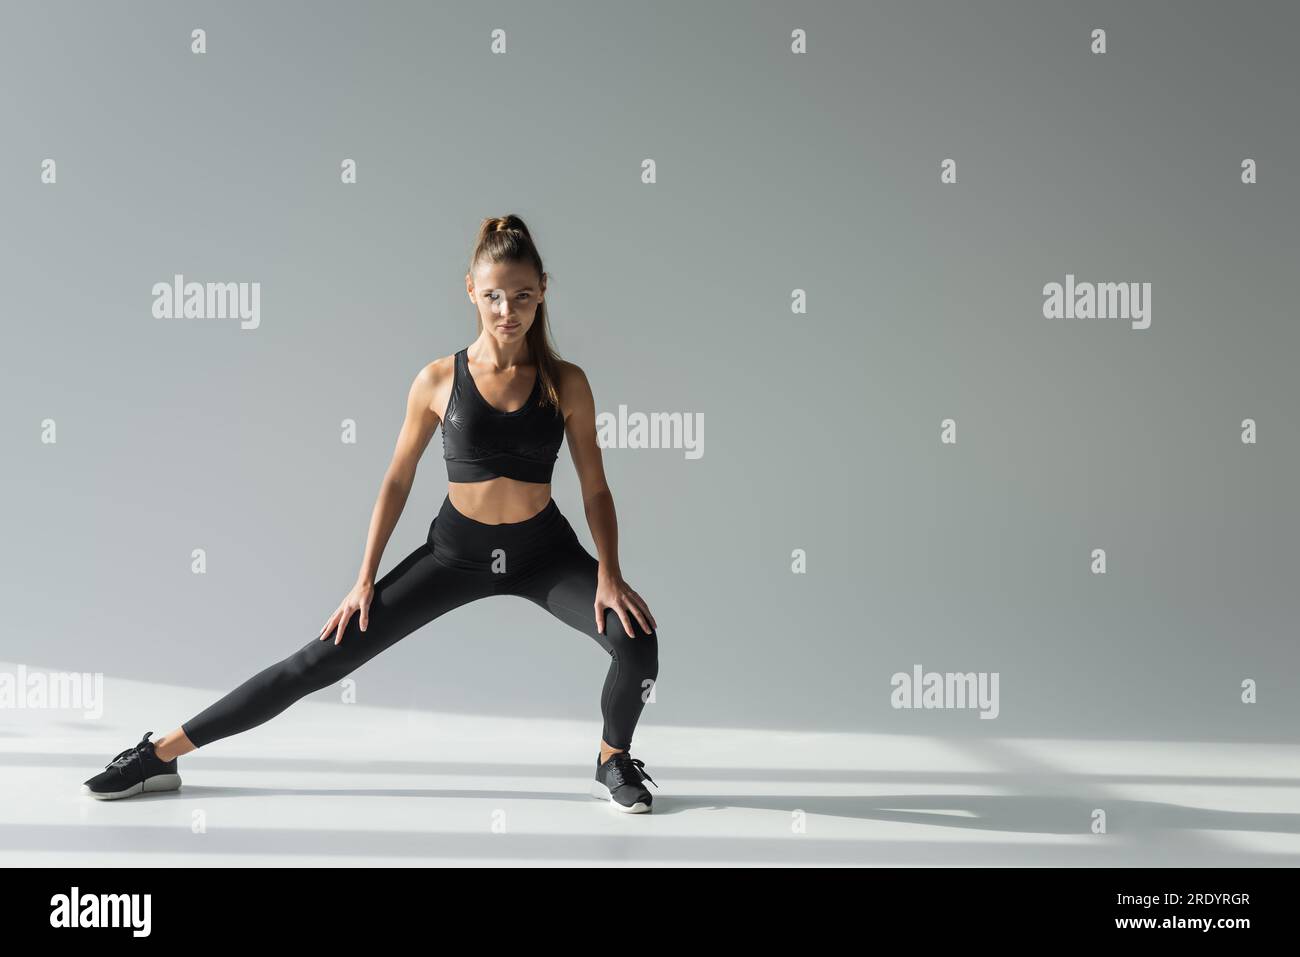 Workout, Sportlerin mit körperbetontem Training auf grauem Hintergrund, sportliches Outfit Stockfoto